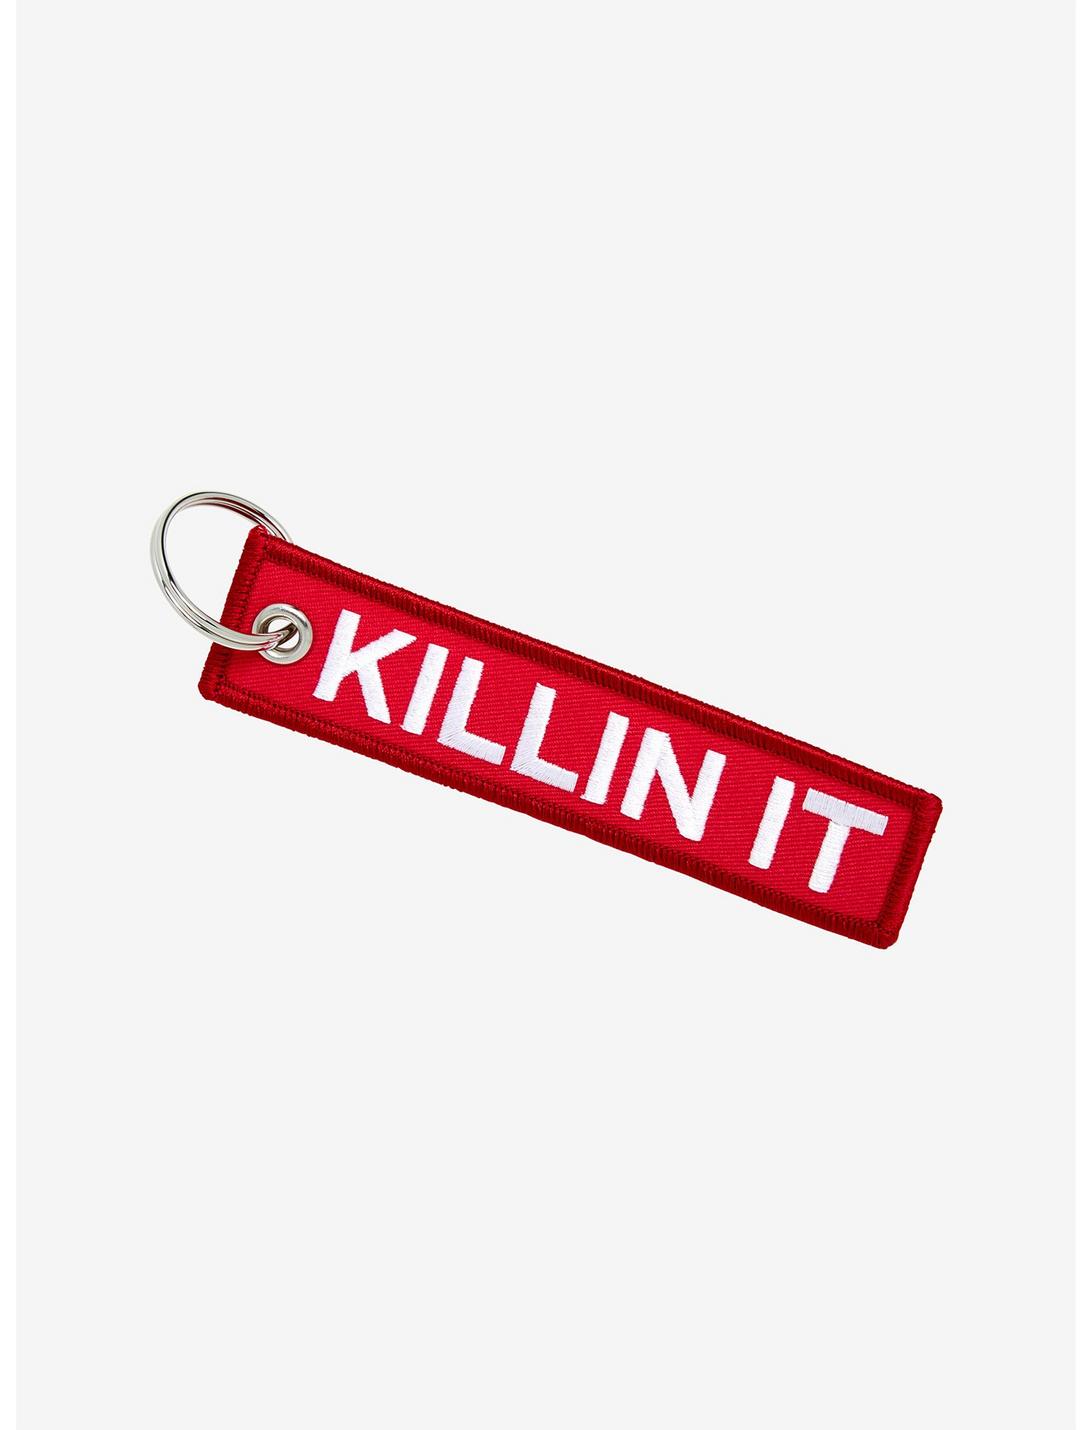 Killin It Fabric Key Chain, , hi-res